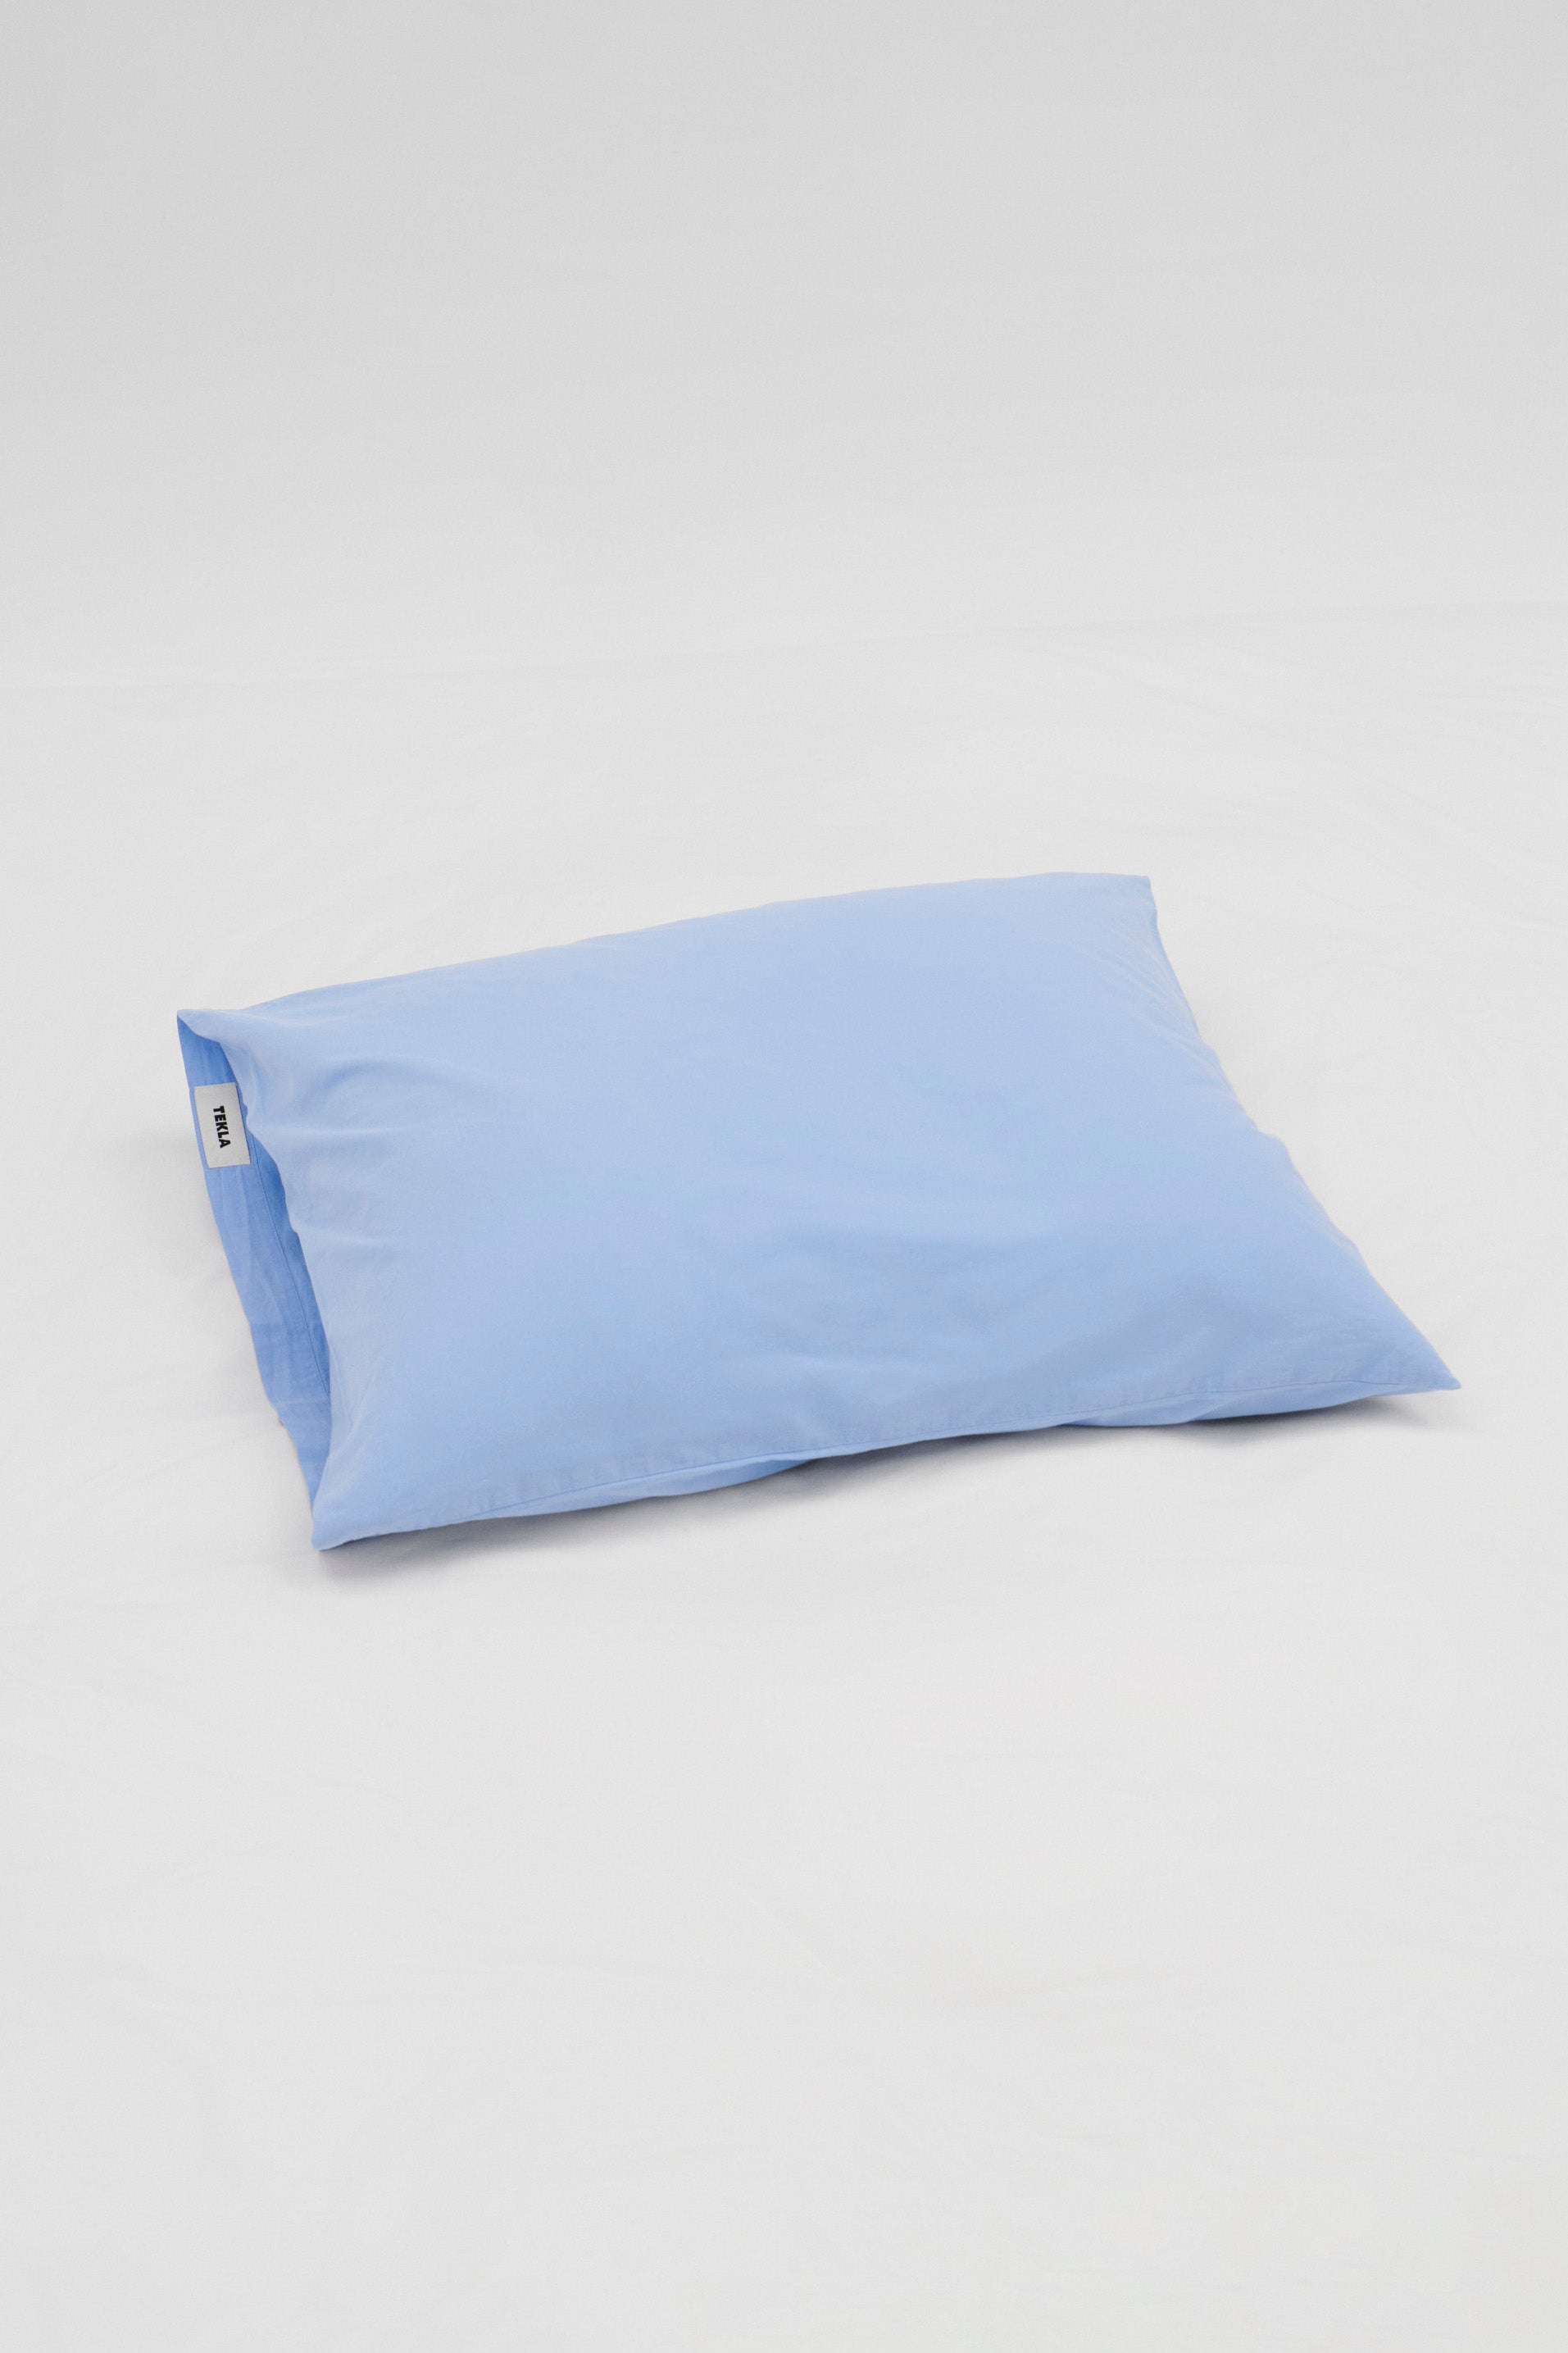 Percale Pillowcase Island Blue